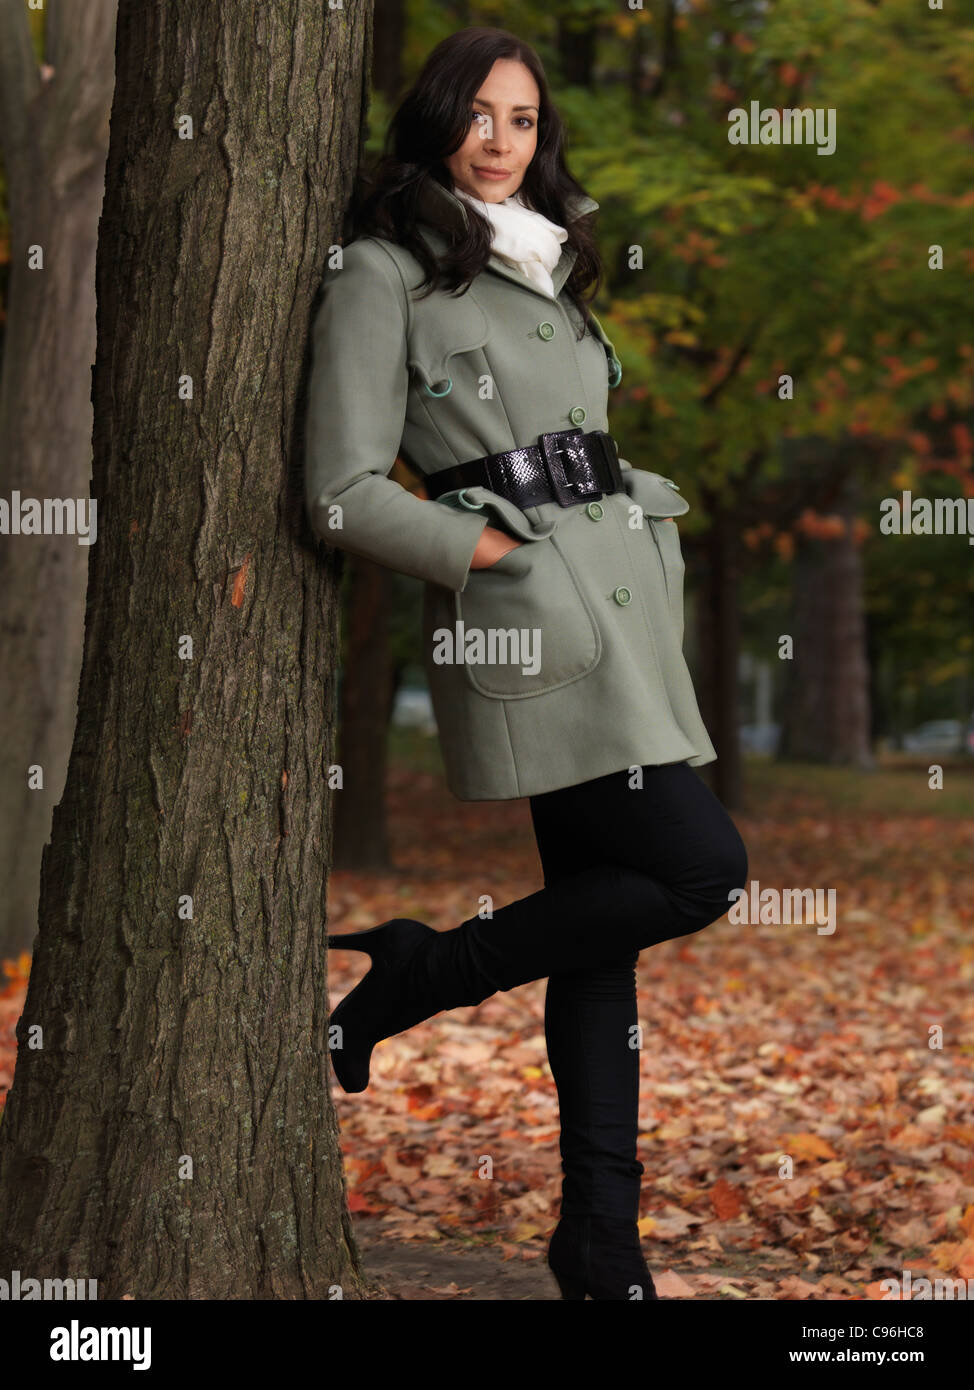 Modisch gekleidet für die Herbstsaison, schöne lächelnde junge Frau trägt einen grünen Mantel, lehnte sich gegen einen Ahornbaum im park Stockfoto